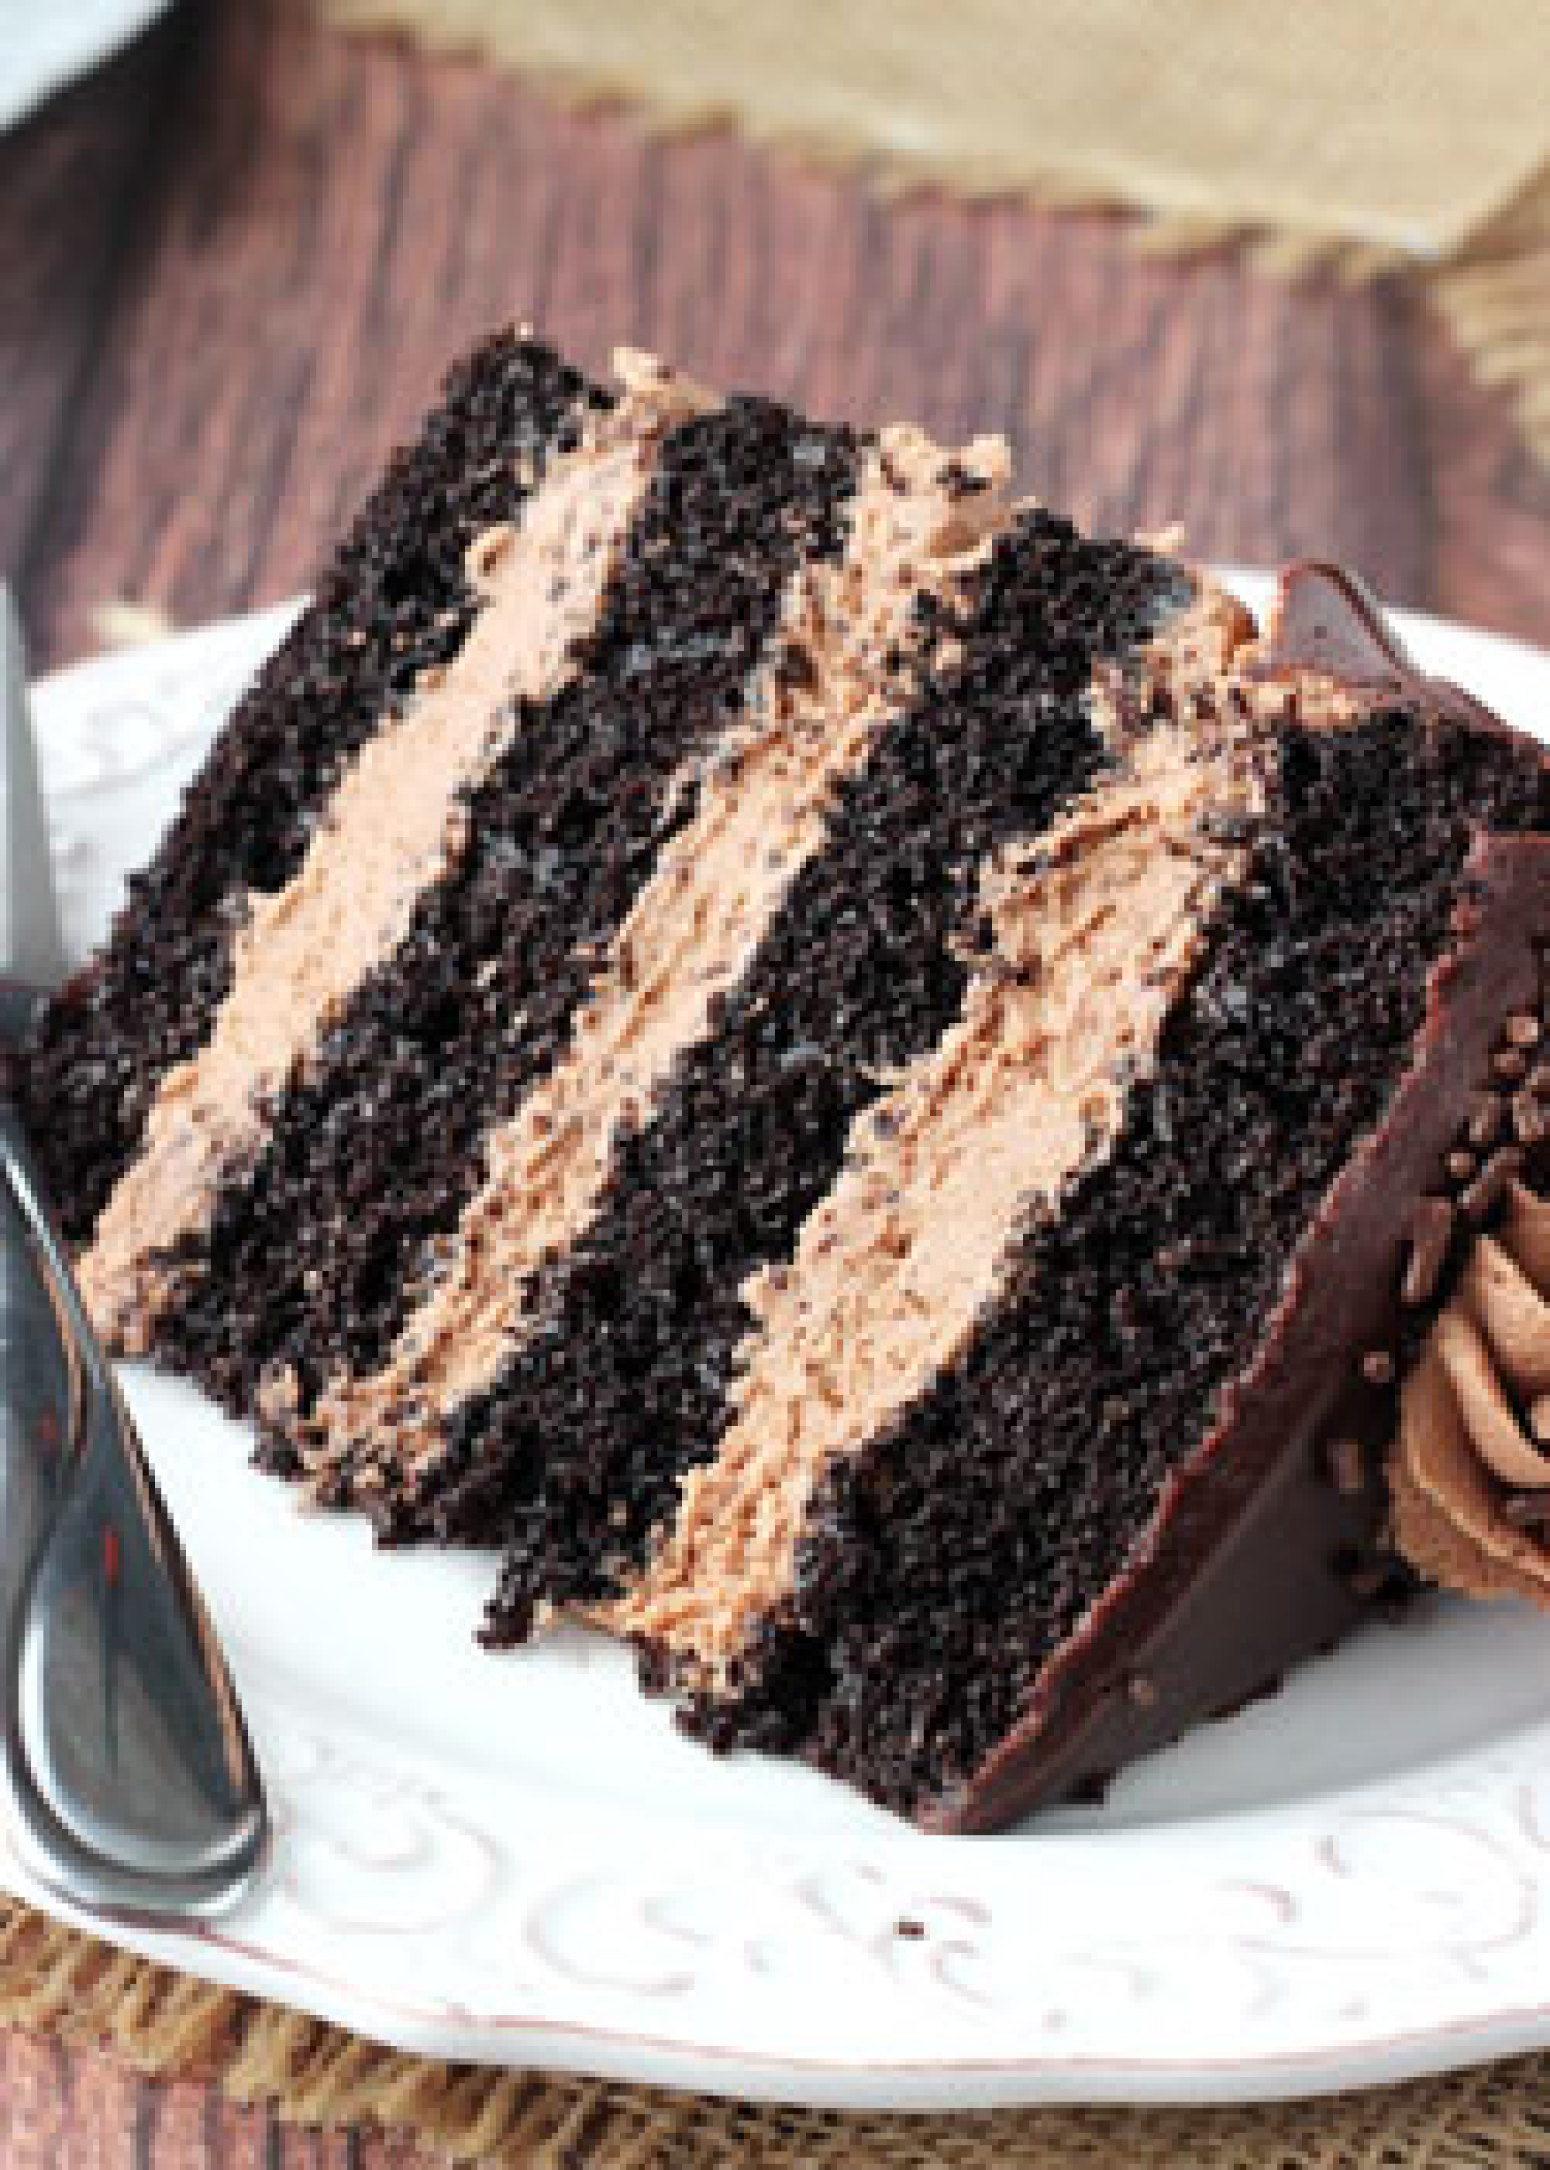 Nutella Chocolate Cake Recipe | Just A Pinch Recipes